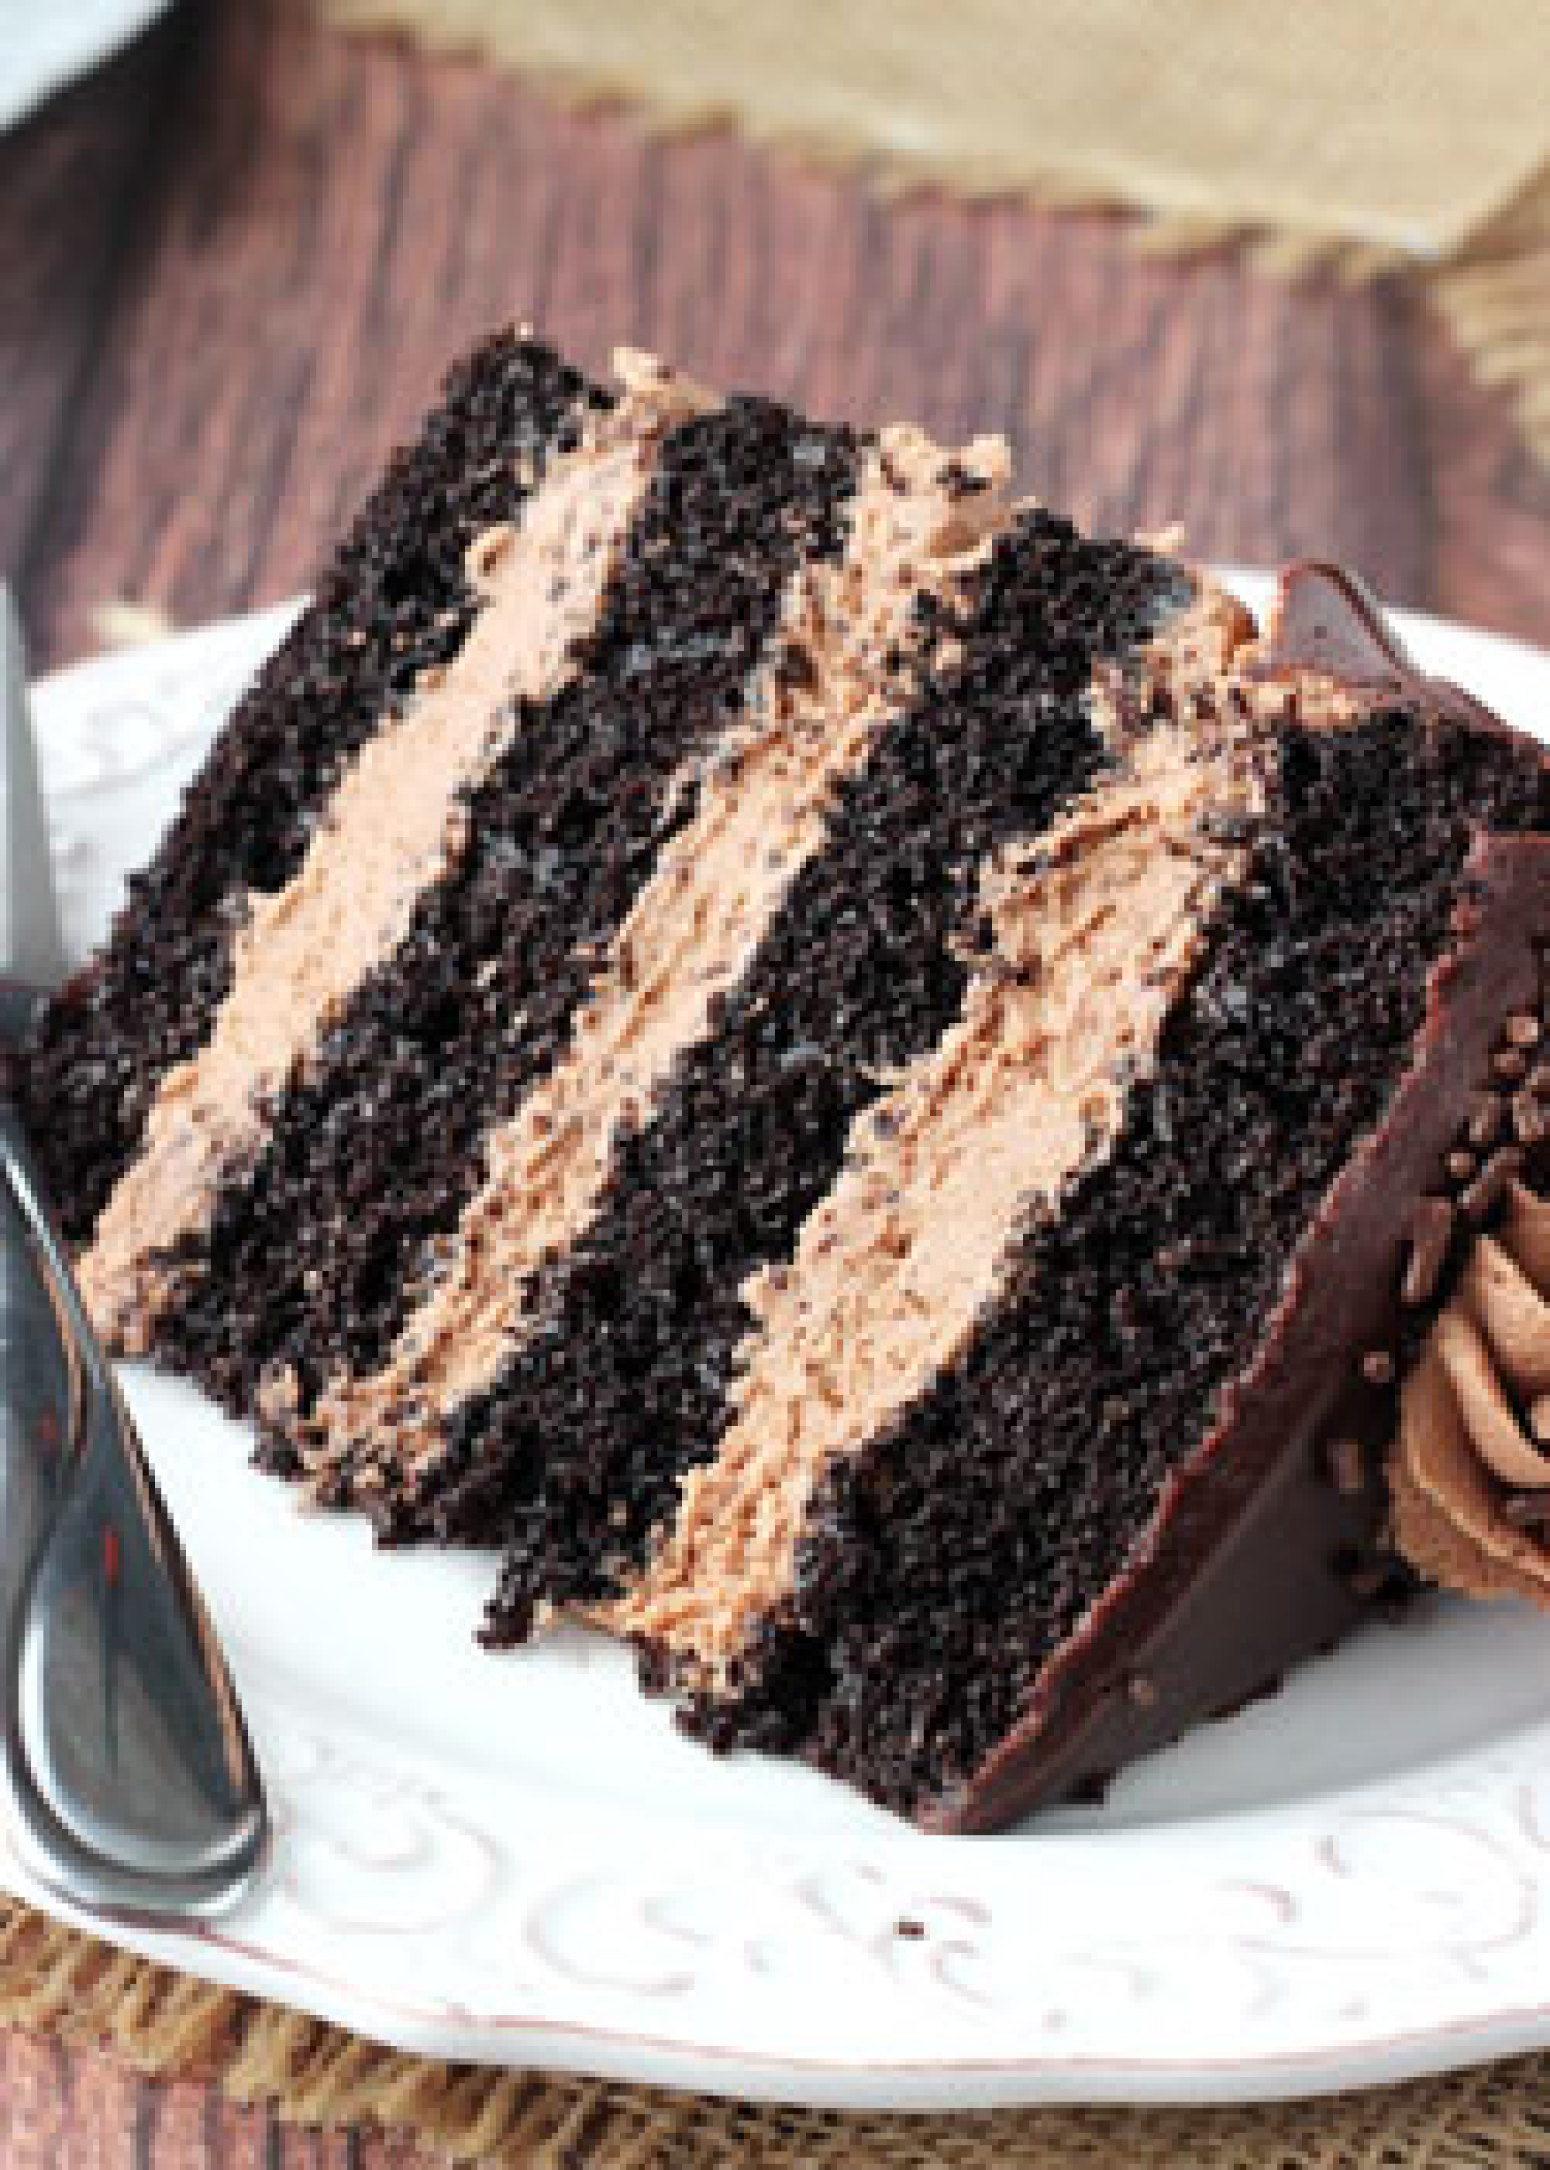 Nutella Chocolate Cake Recipe | Just A Pinch Recipes